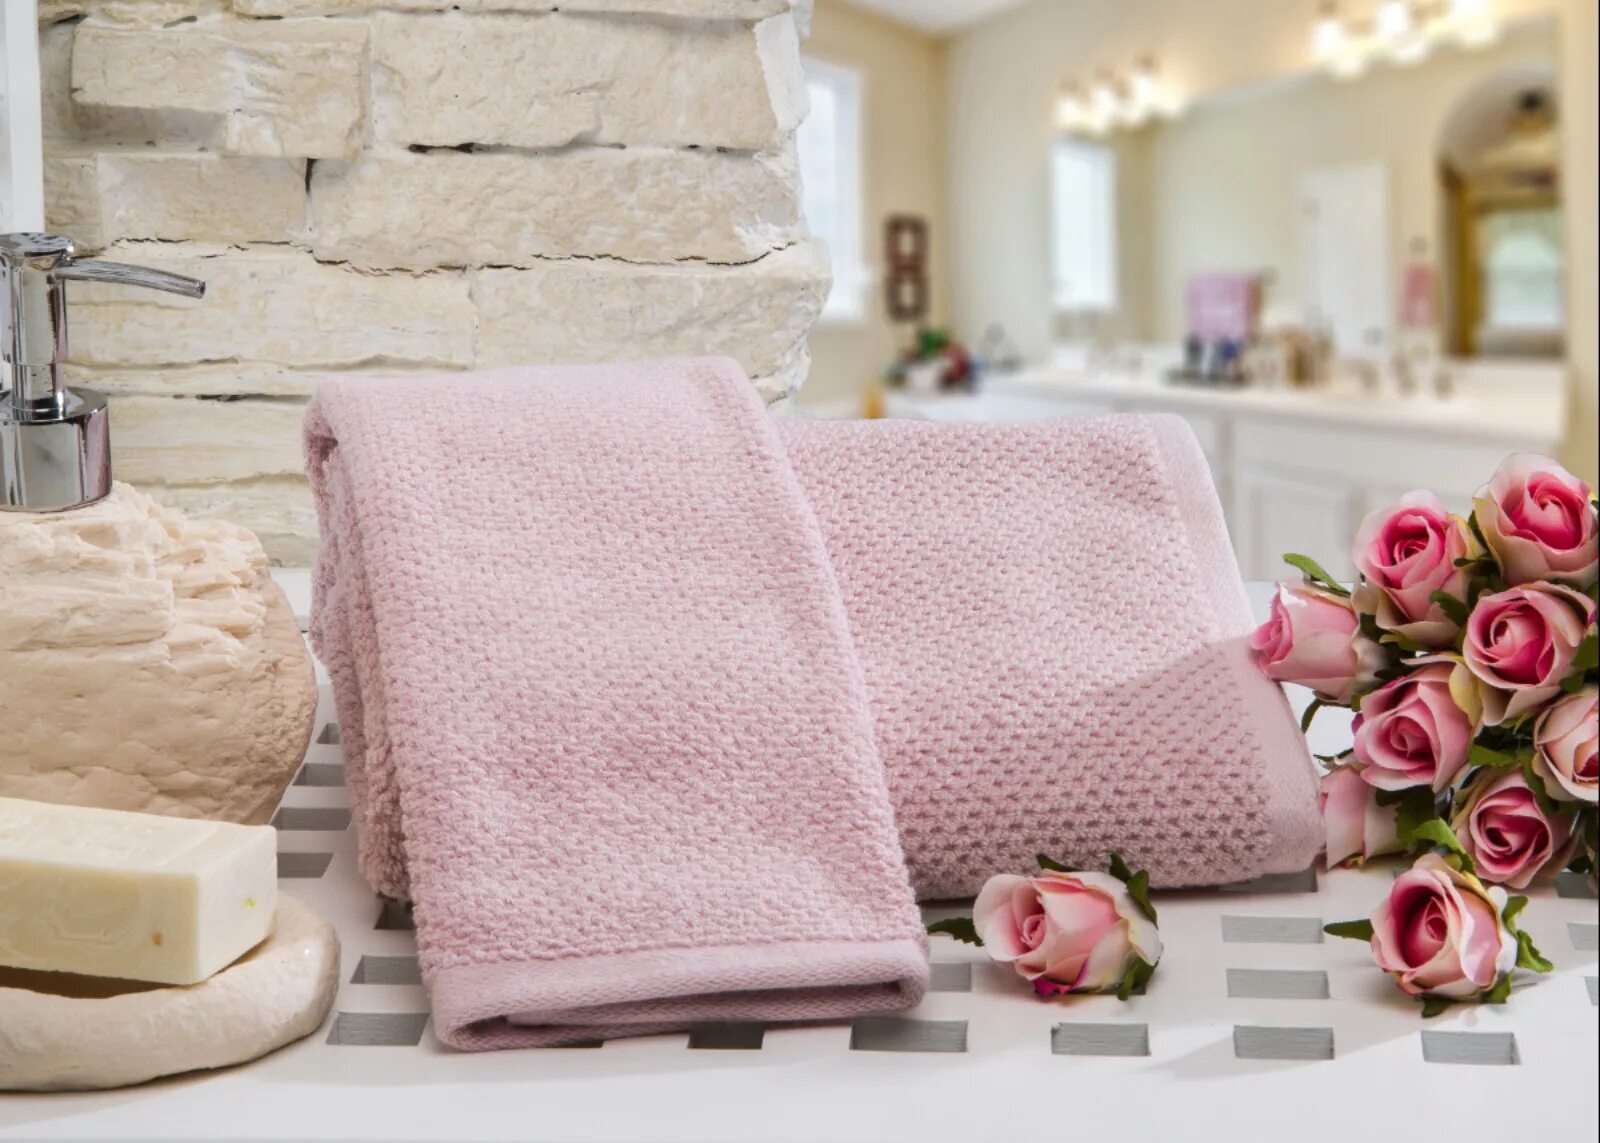 Textile полотенце. Полотенца Home Sweet Home. Textile Boutique полотенце микрофибра. Розовое полотенце. Полотенце махровое розовое.